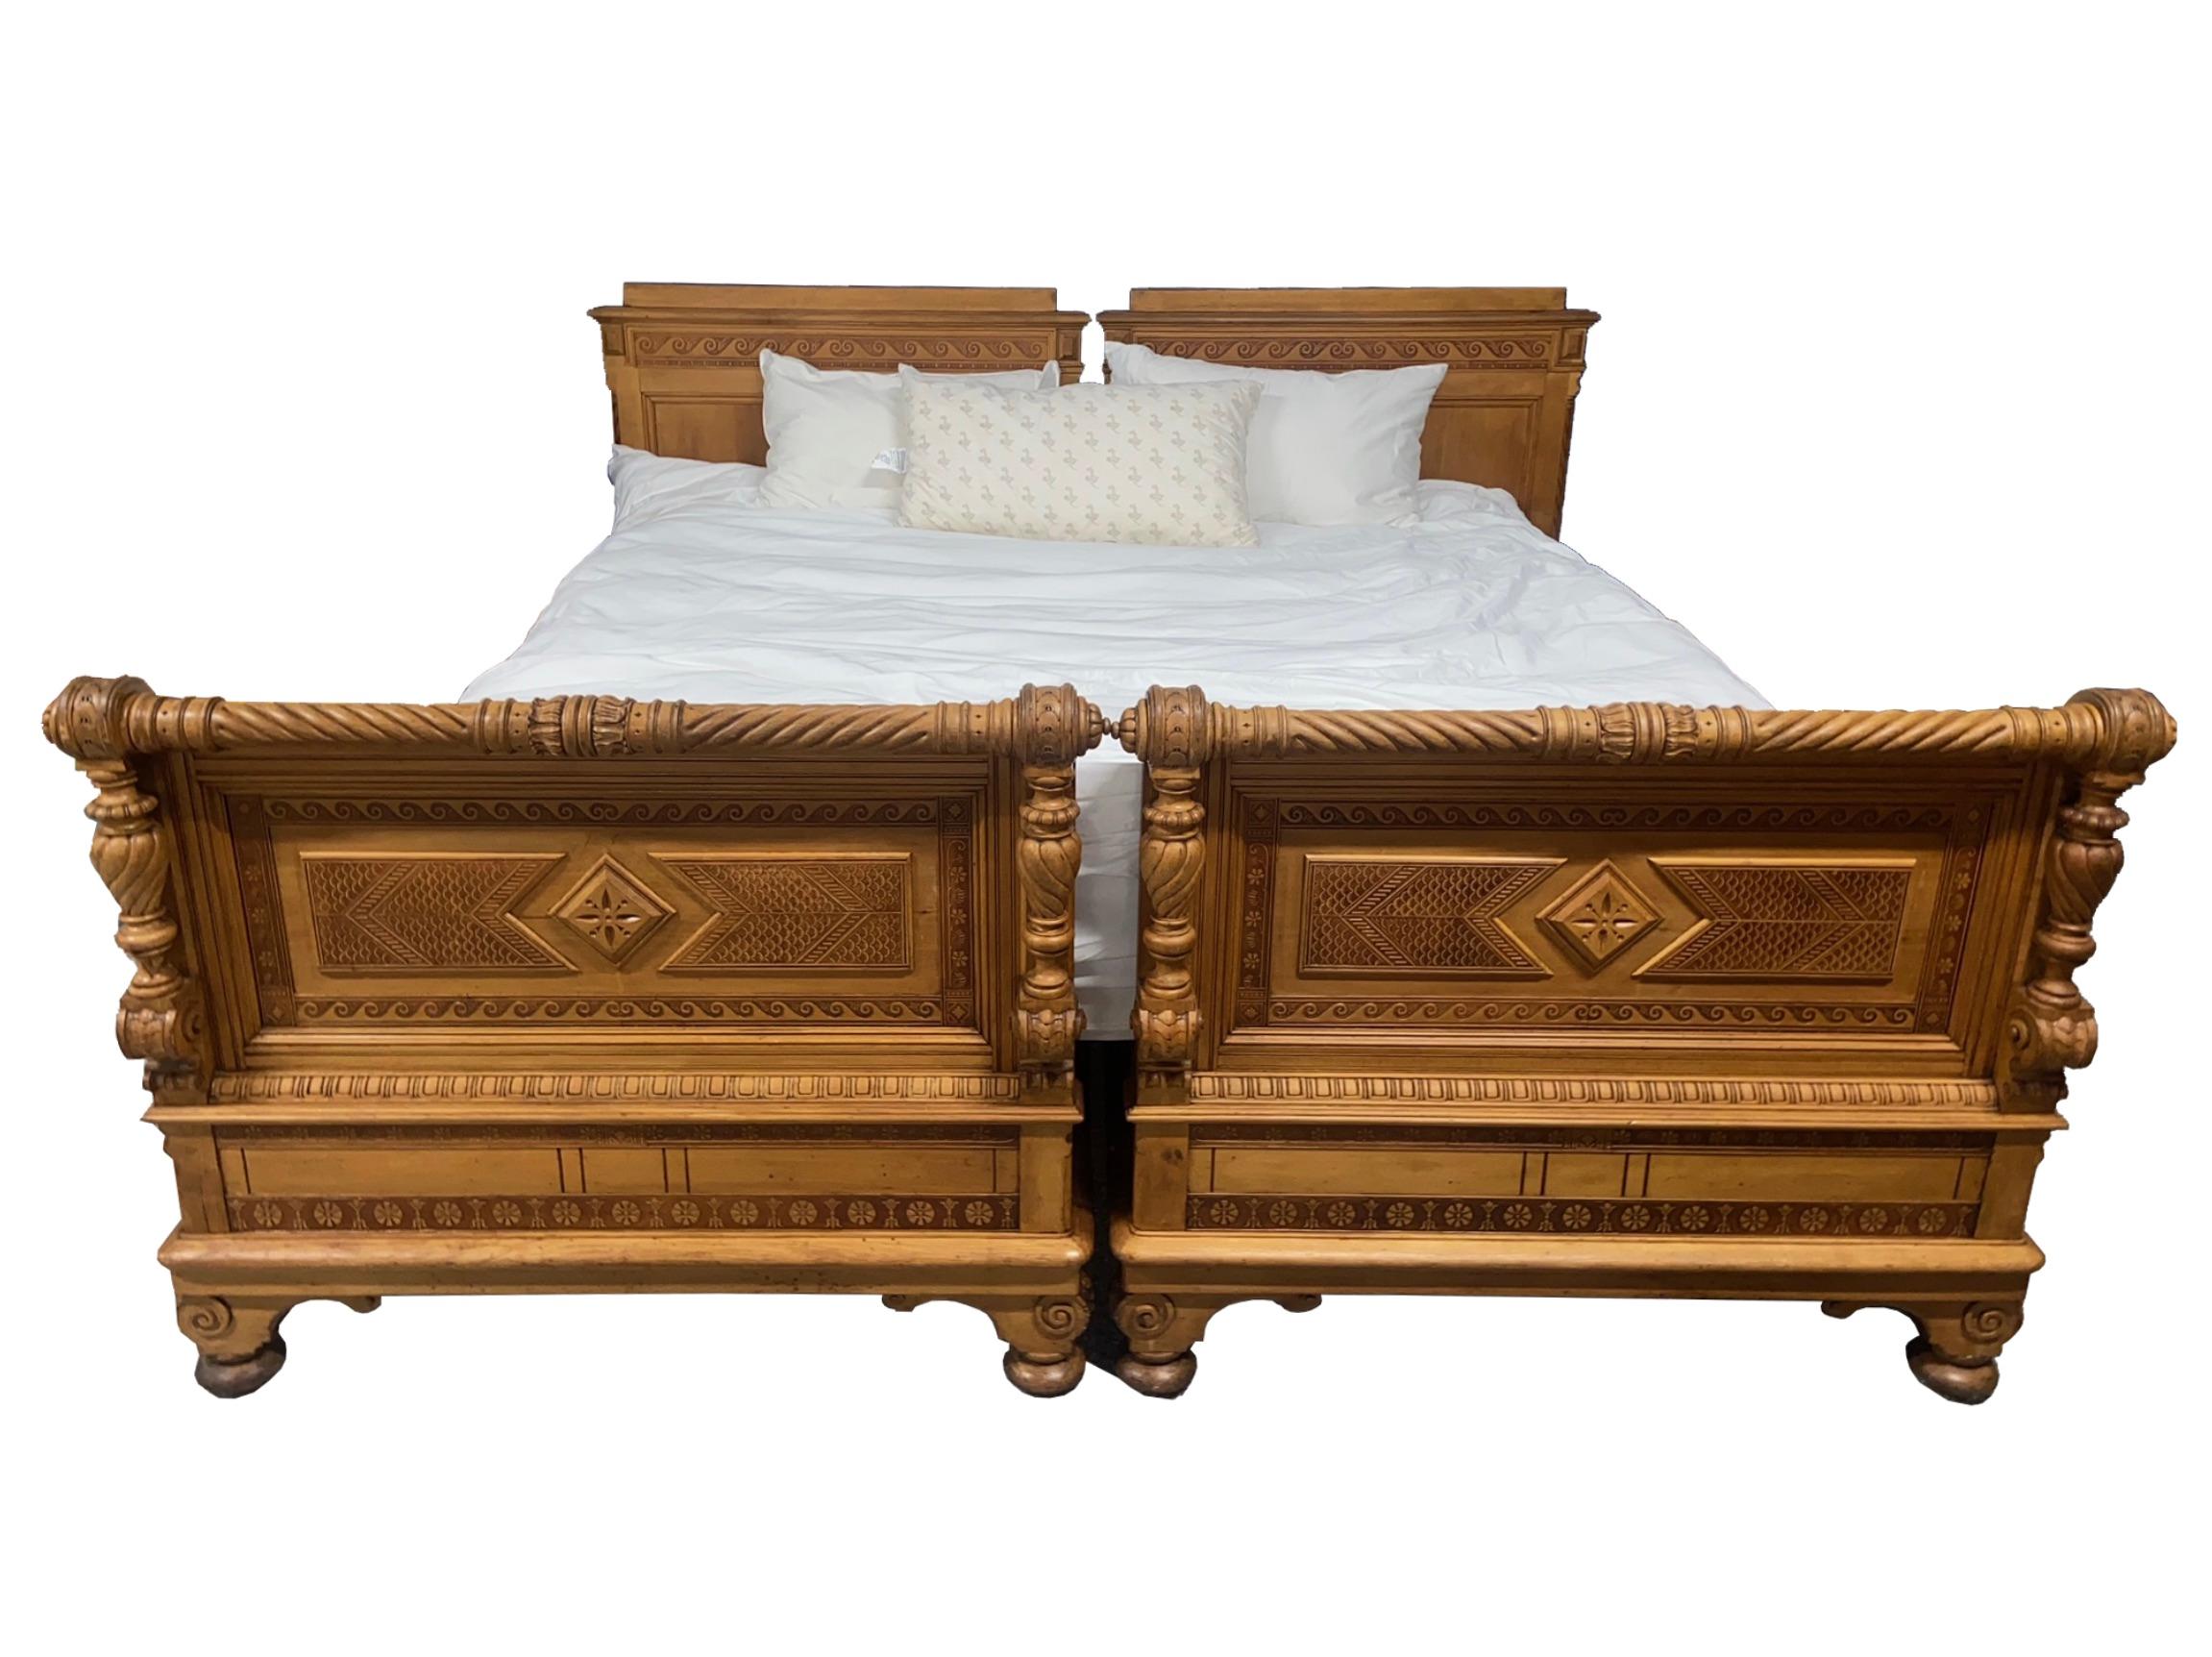 47,5″H x 88″D x 91,5″W

Ein auffälliges und kunstvoll kardiertes Paar österreichischer Vintage-Betten könnte gut zu einer verschneiten Berghütte passen. Jetzt neu konfiguriert für eine individuelle Kingsize-Matratze, können diese Betten mit